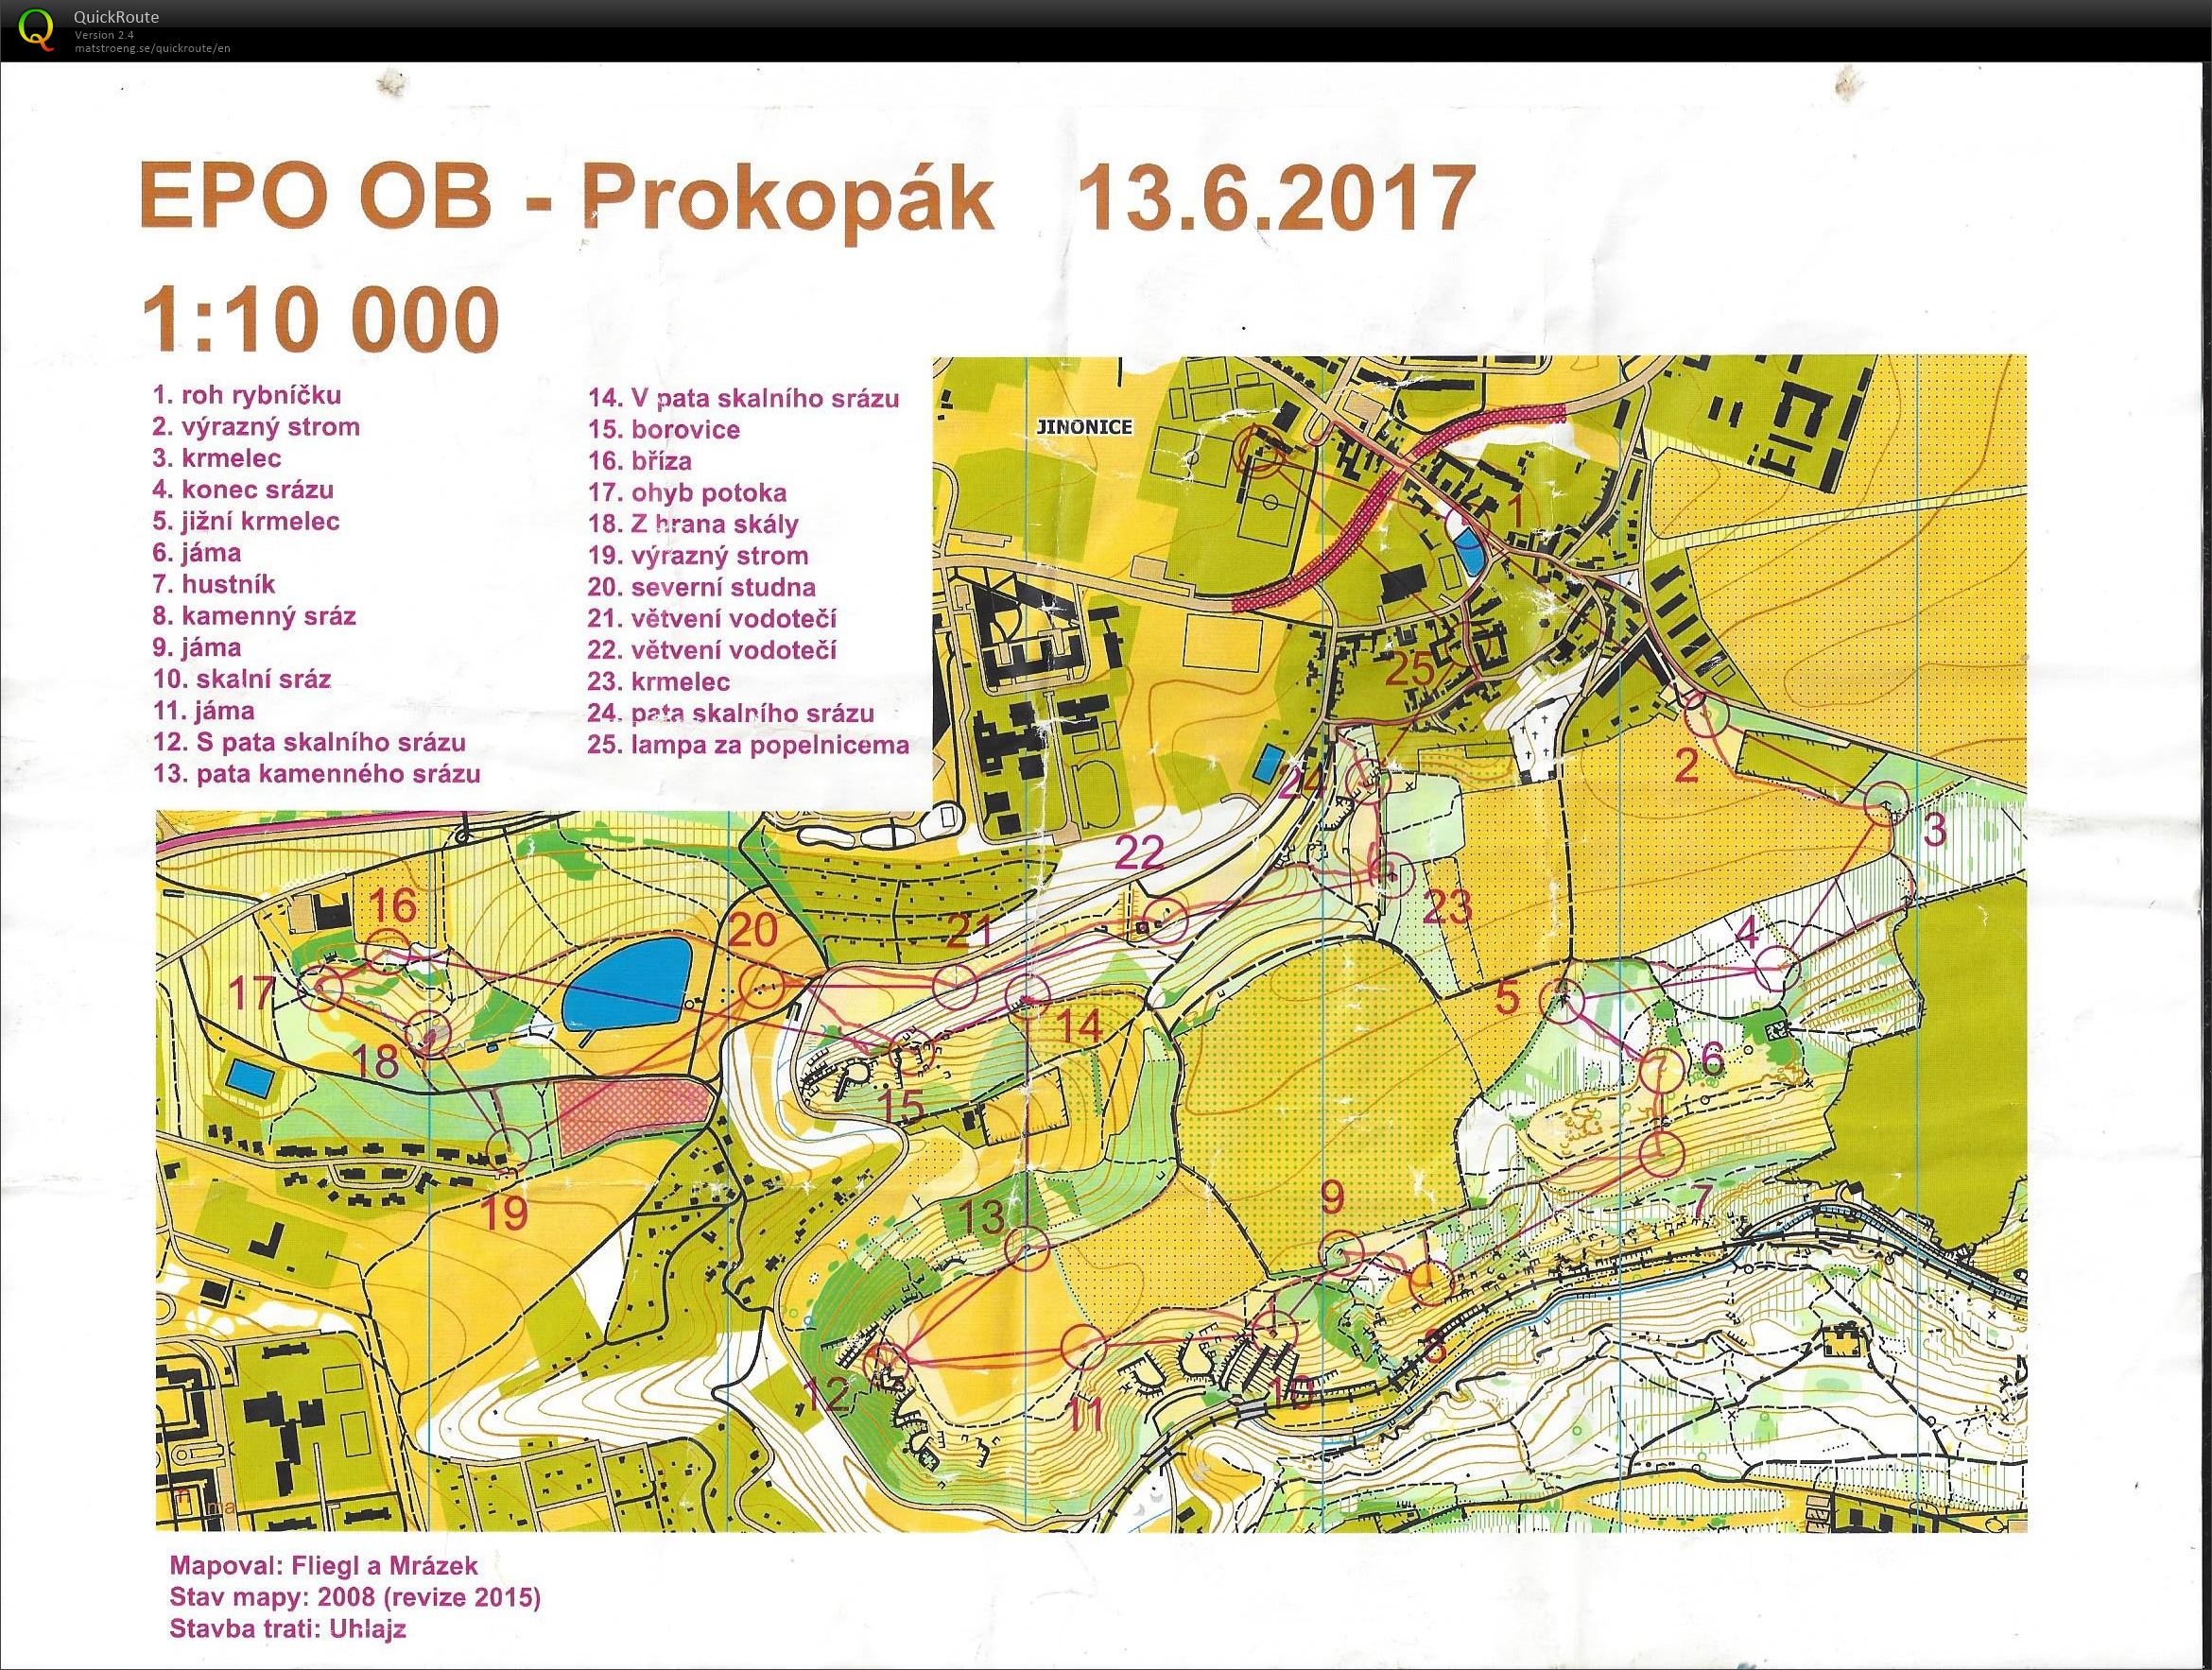 EPO OB - Prokopák (13-06-2017)